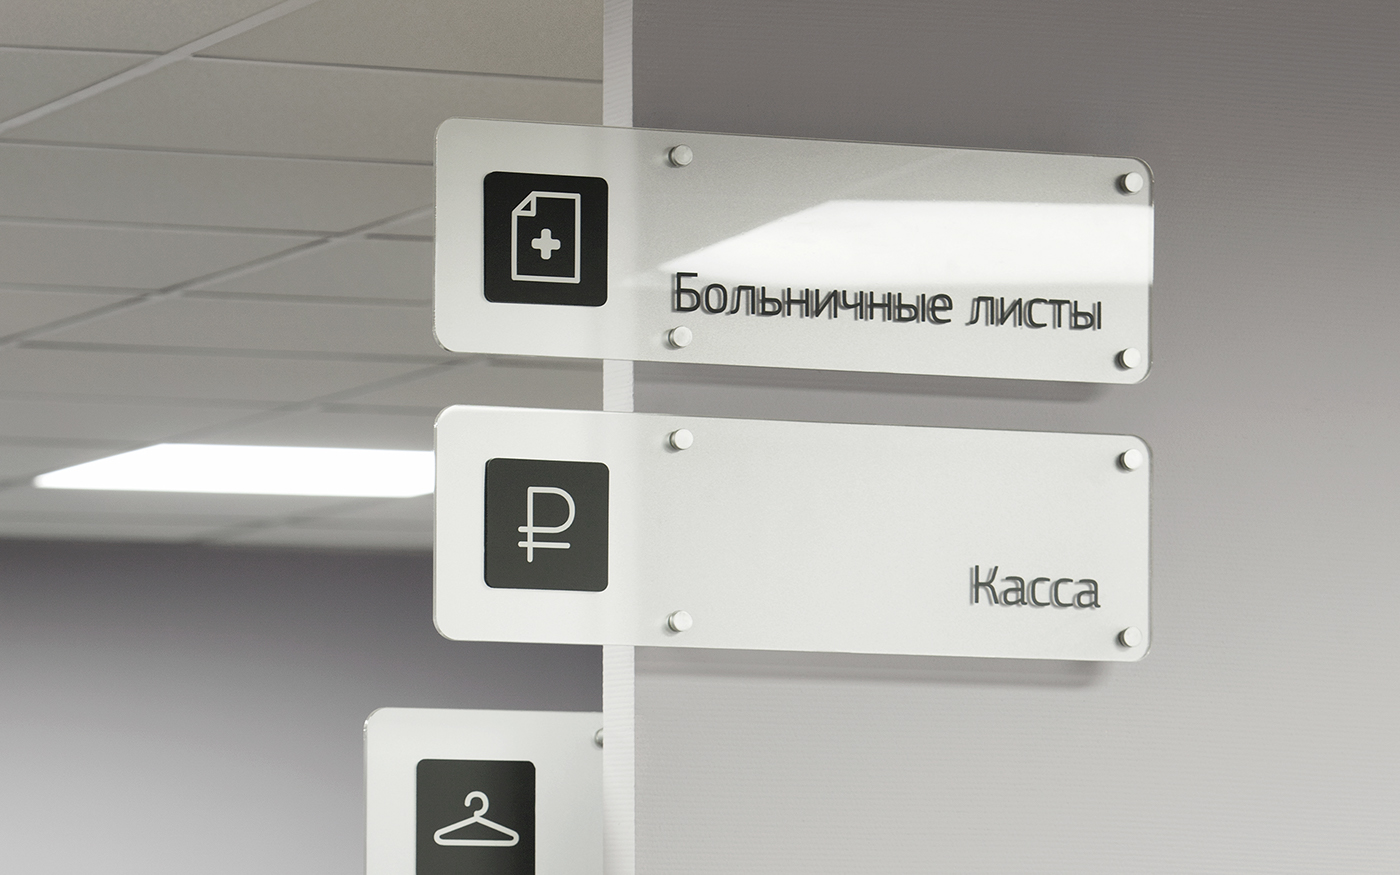 Medecine clinic medical center navigation signs pictogram contrast inversion Minimalism